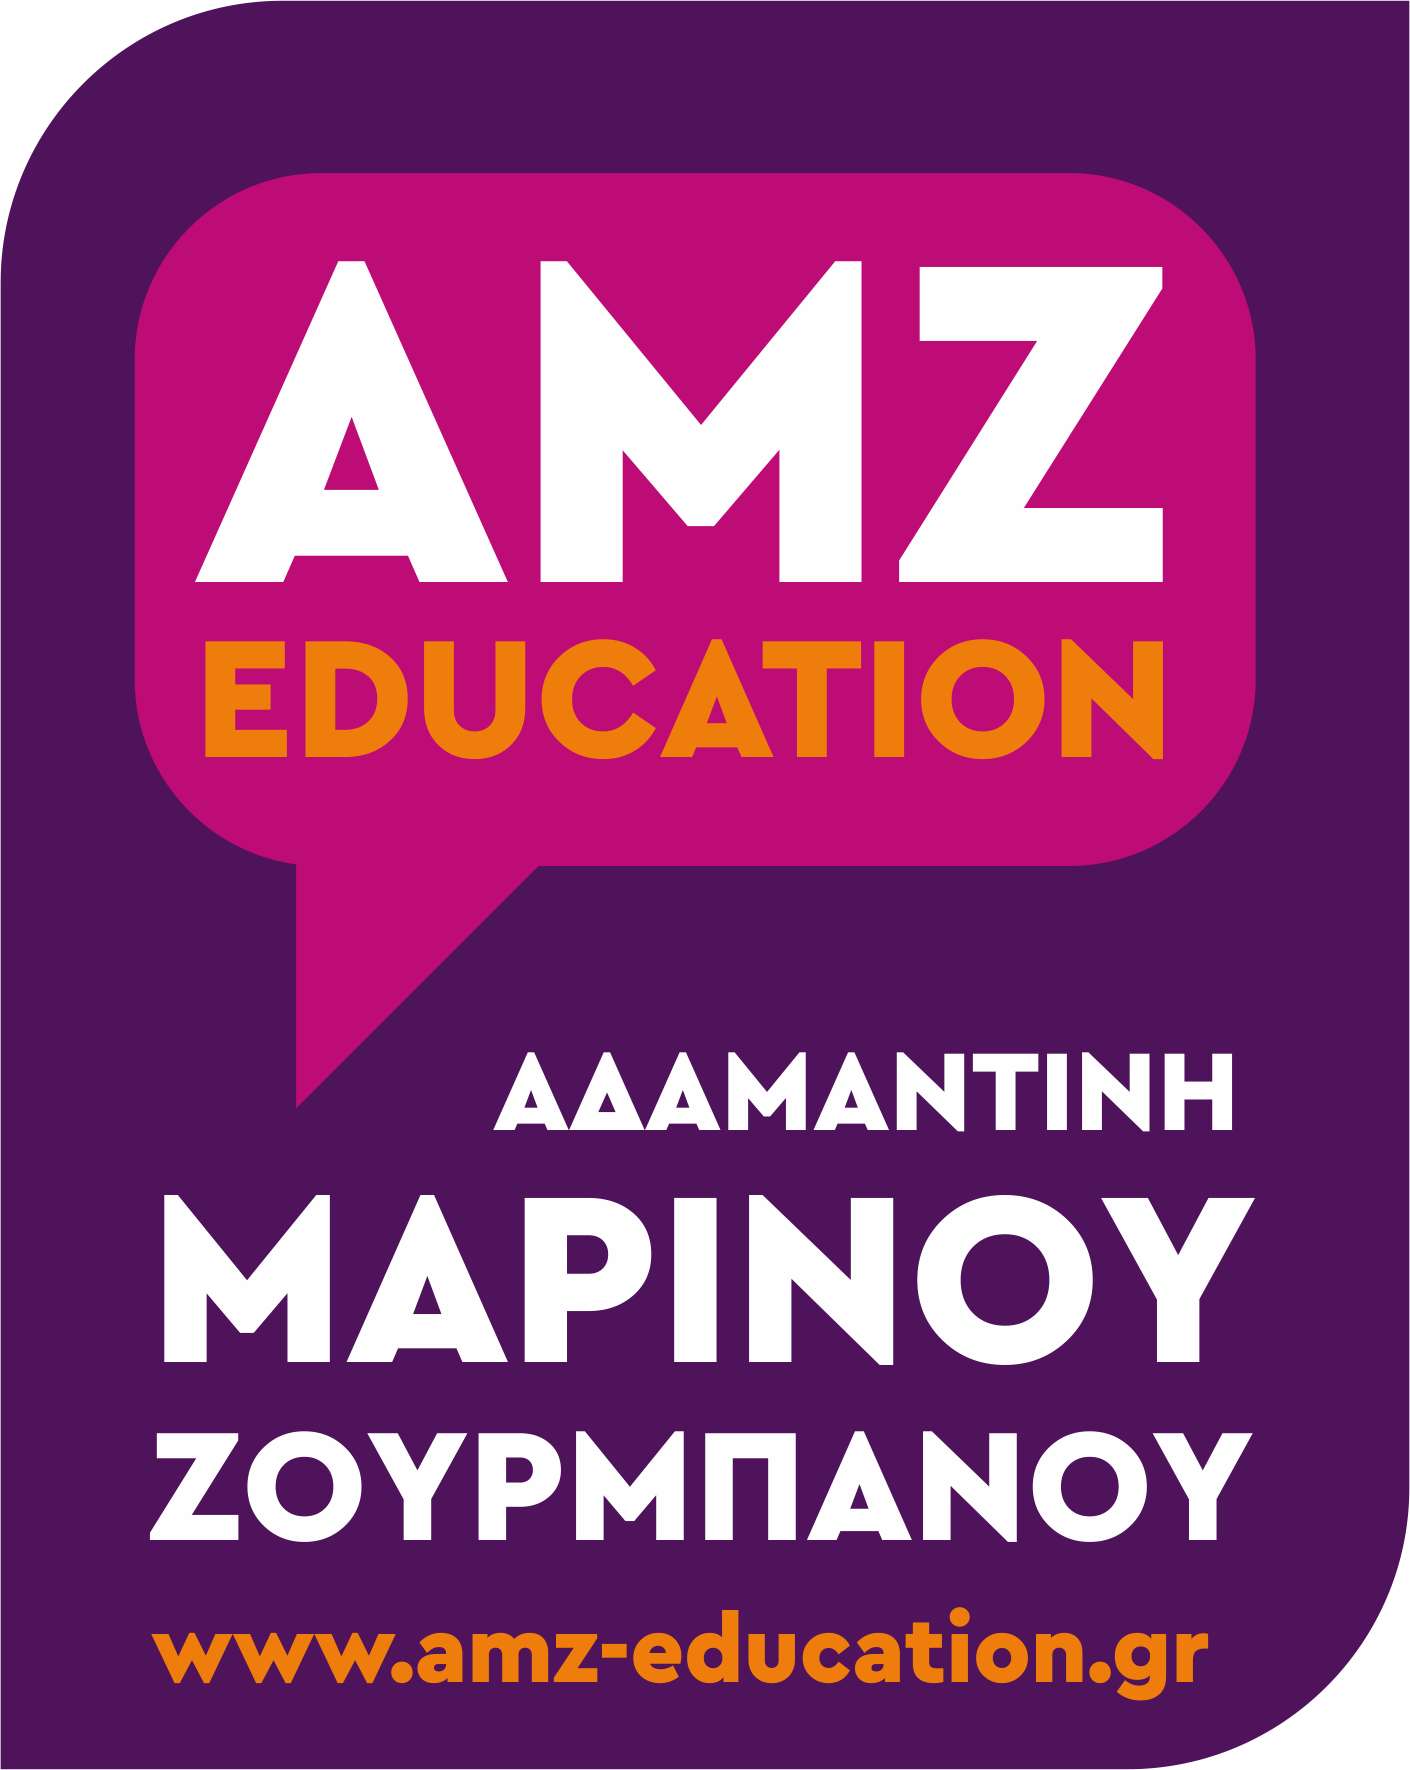 AMZ Education